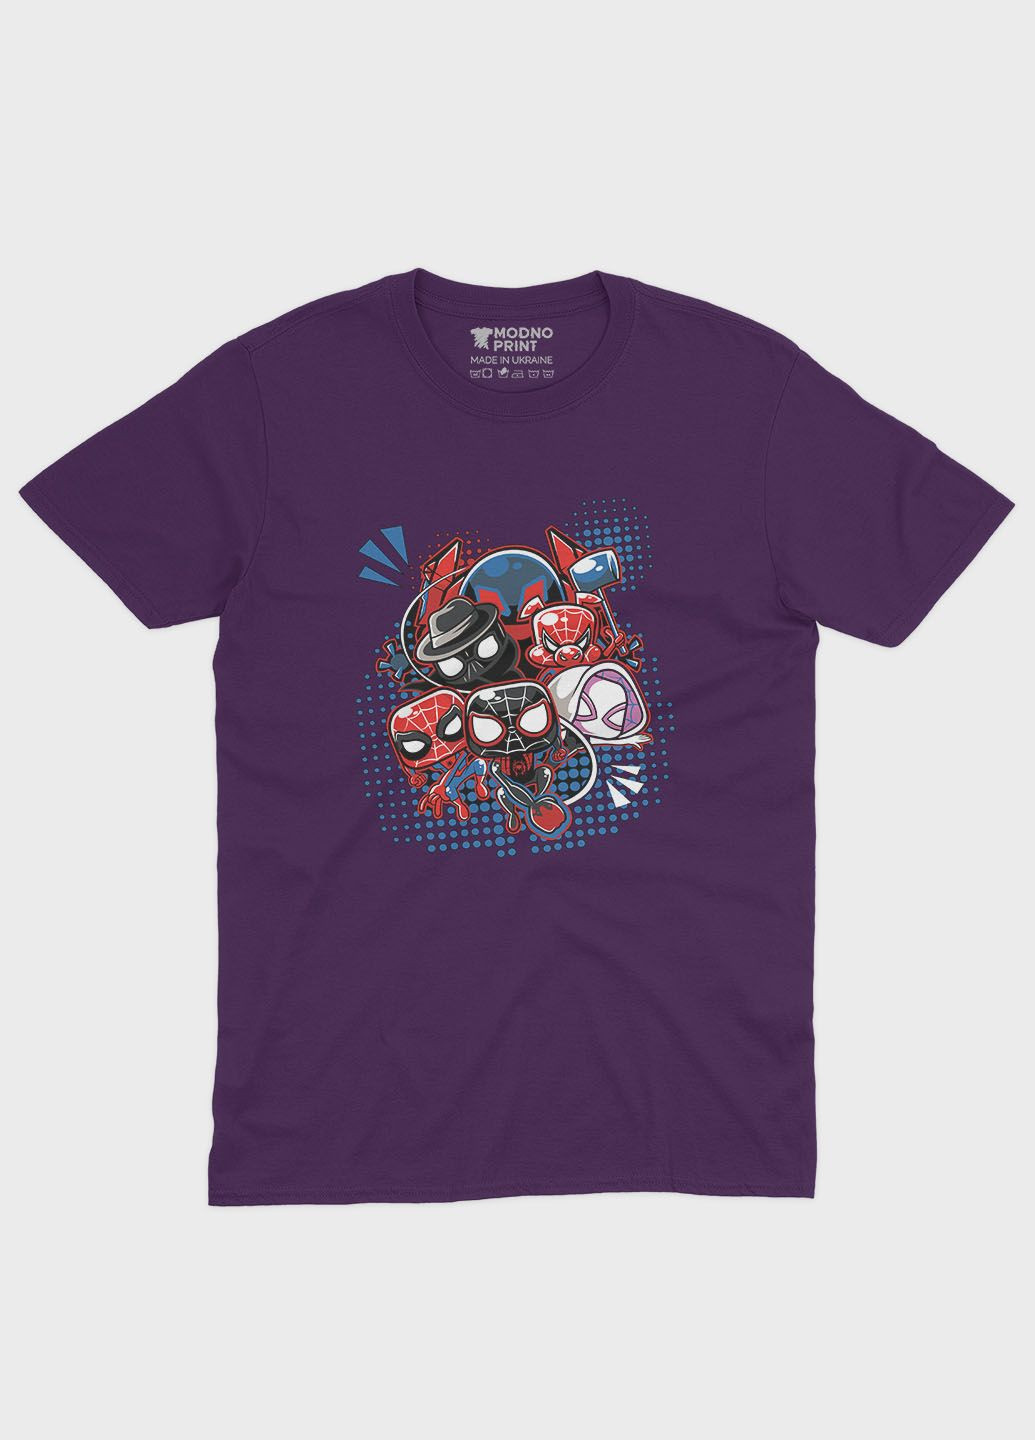 Фиолетовая демисезонная футболка для девочки с принтом супергероя - человек-паук (ts001-1-dby-006-014-023-g) Modno